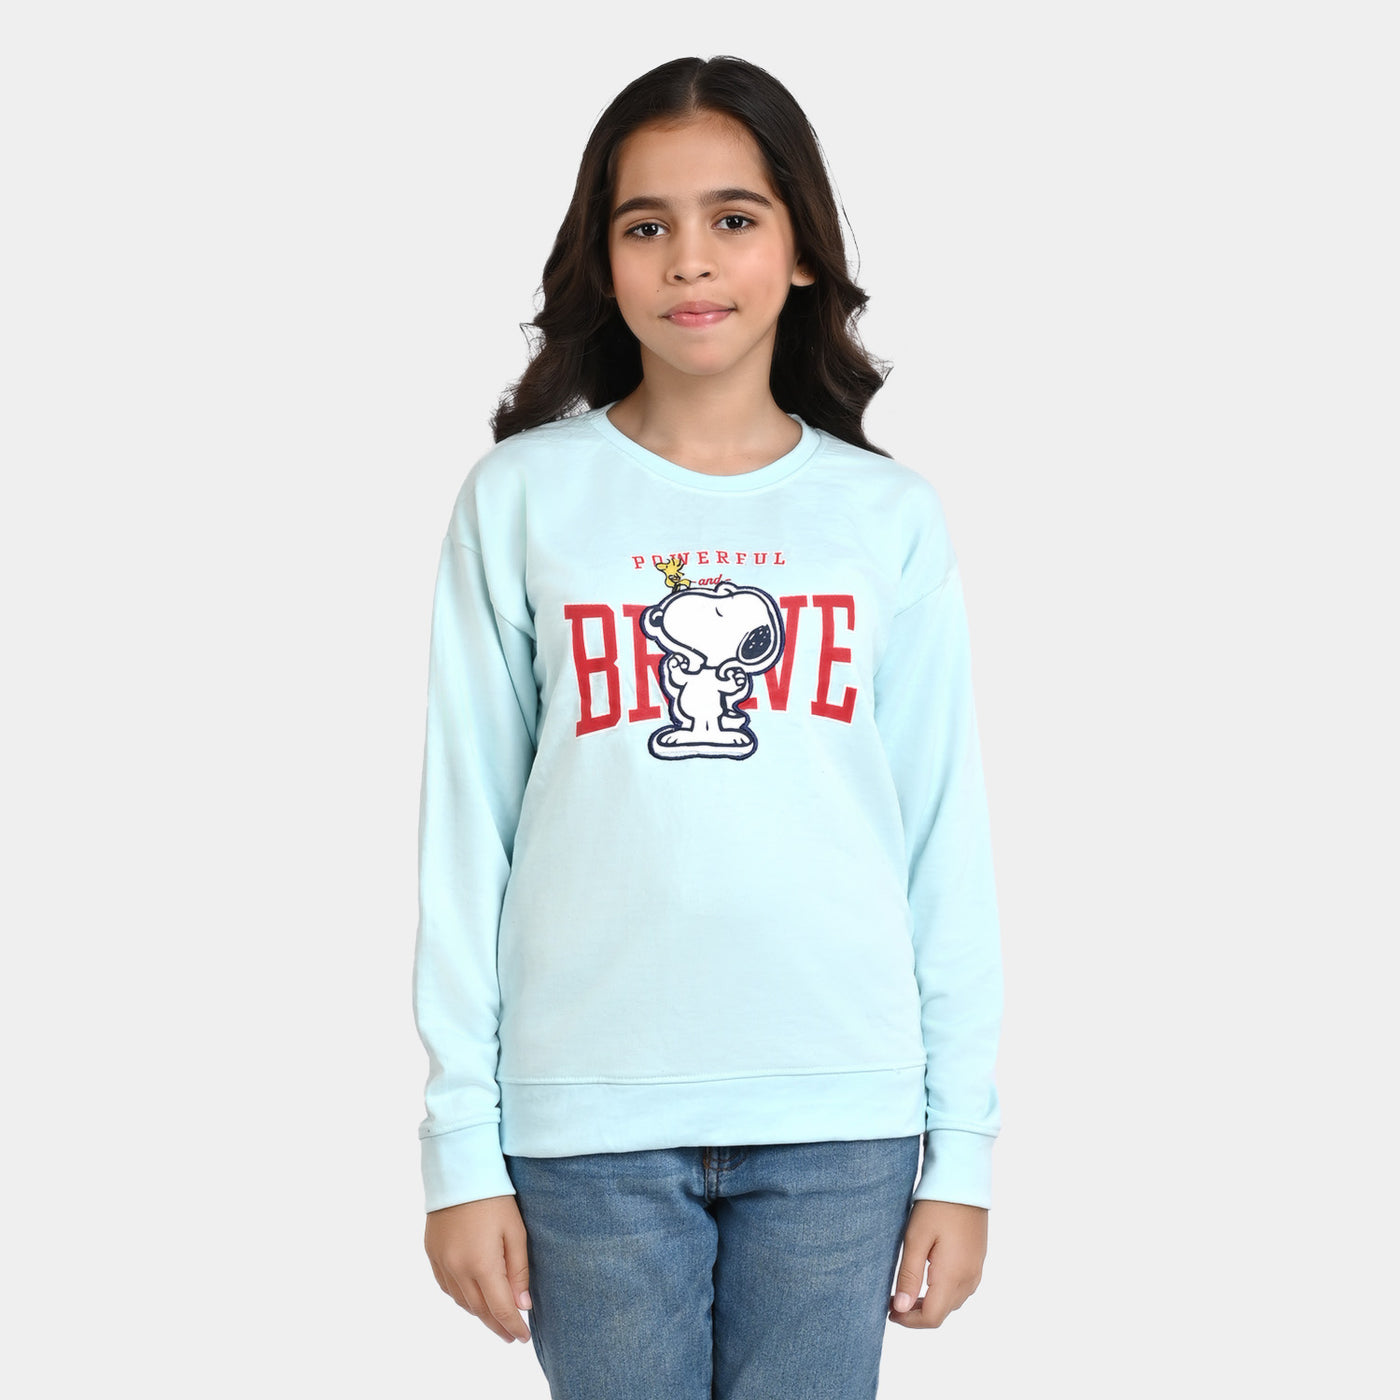 Girls Fleece Sweatshirt Brave-Blue Elixi